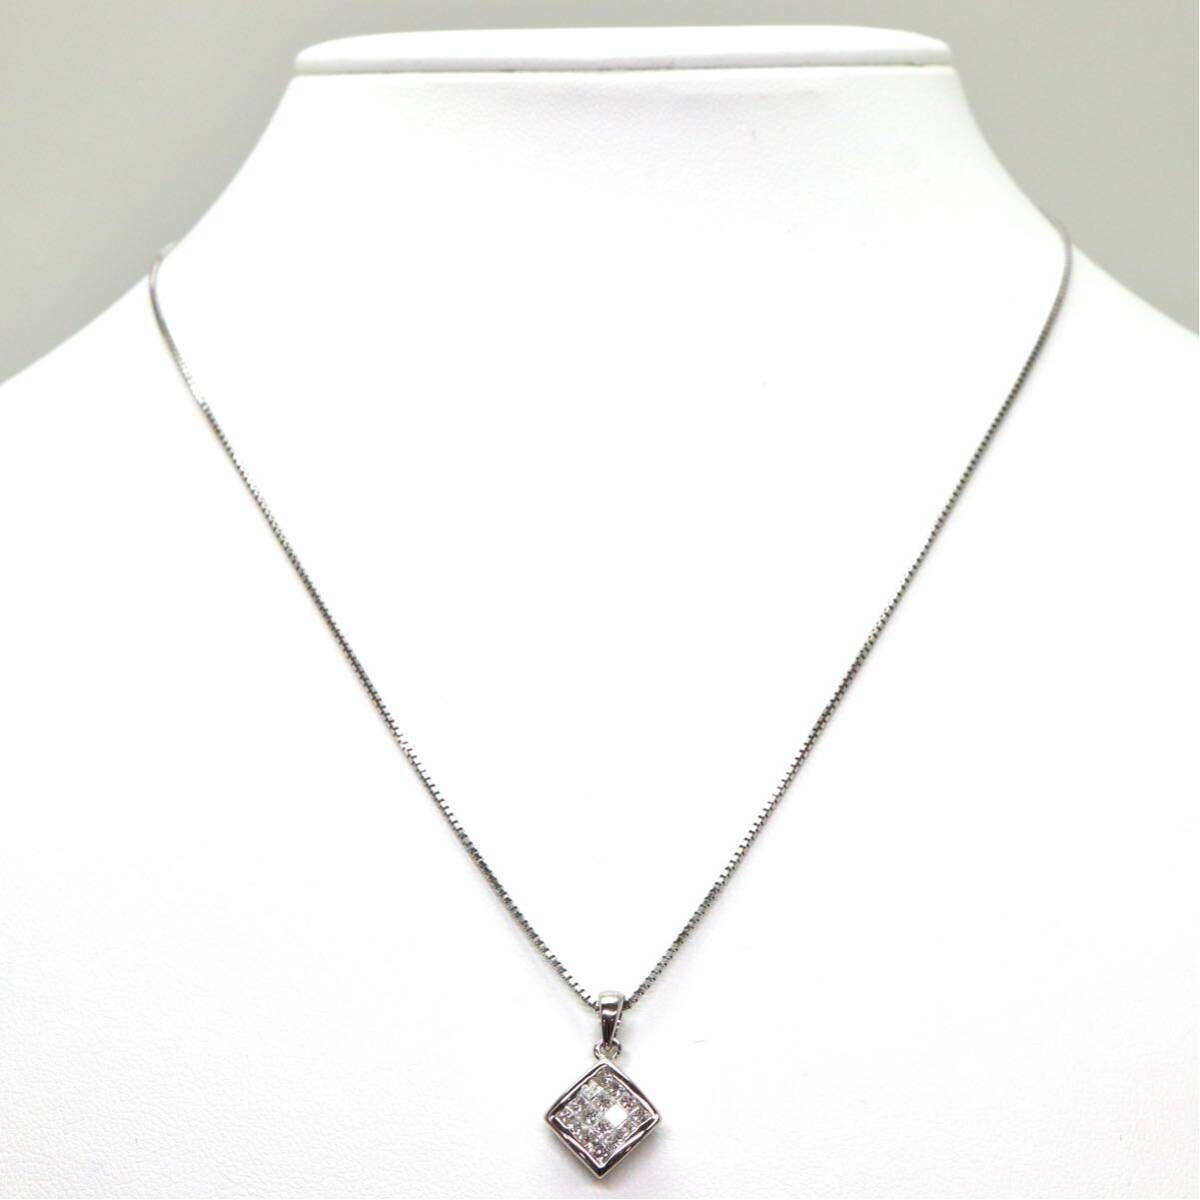 ◆K18 天然ダイヤモンドネックレス◆M 約4.6g 約45.0cm diamond necklace jewelry ジュエリー ED7/ED7の画像2